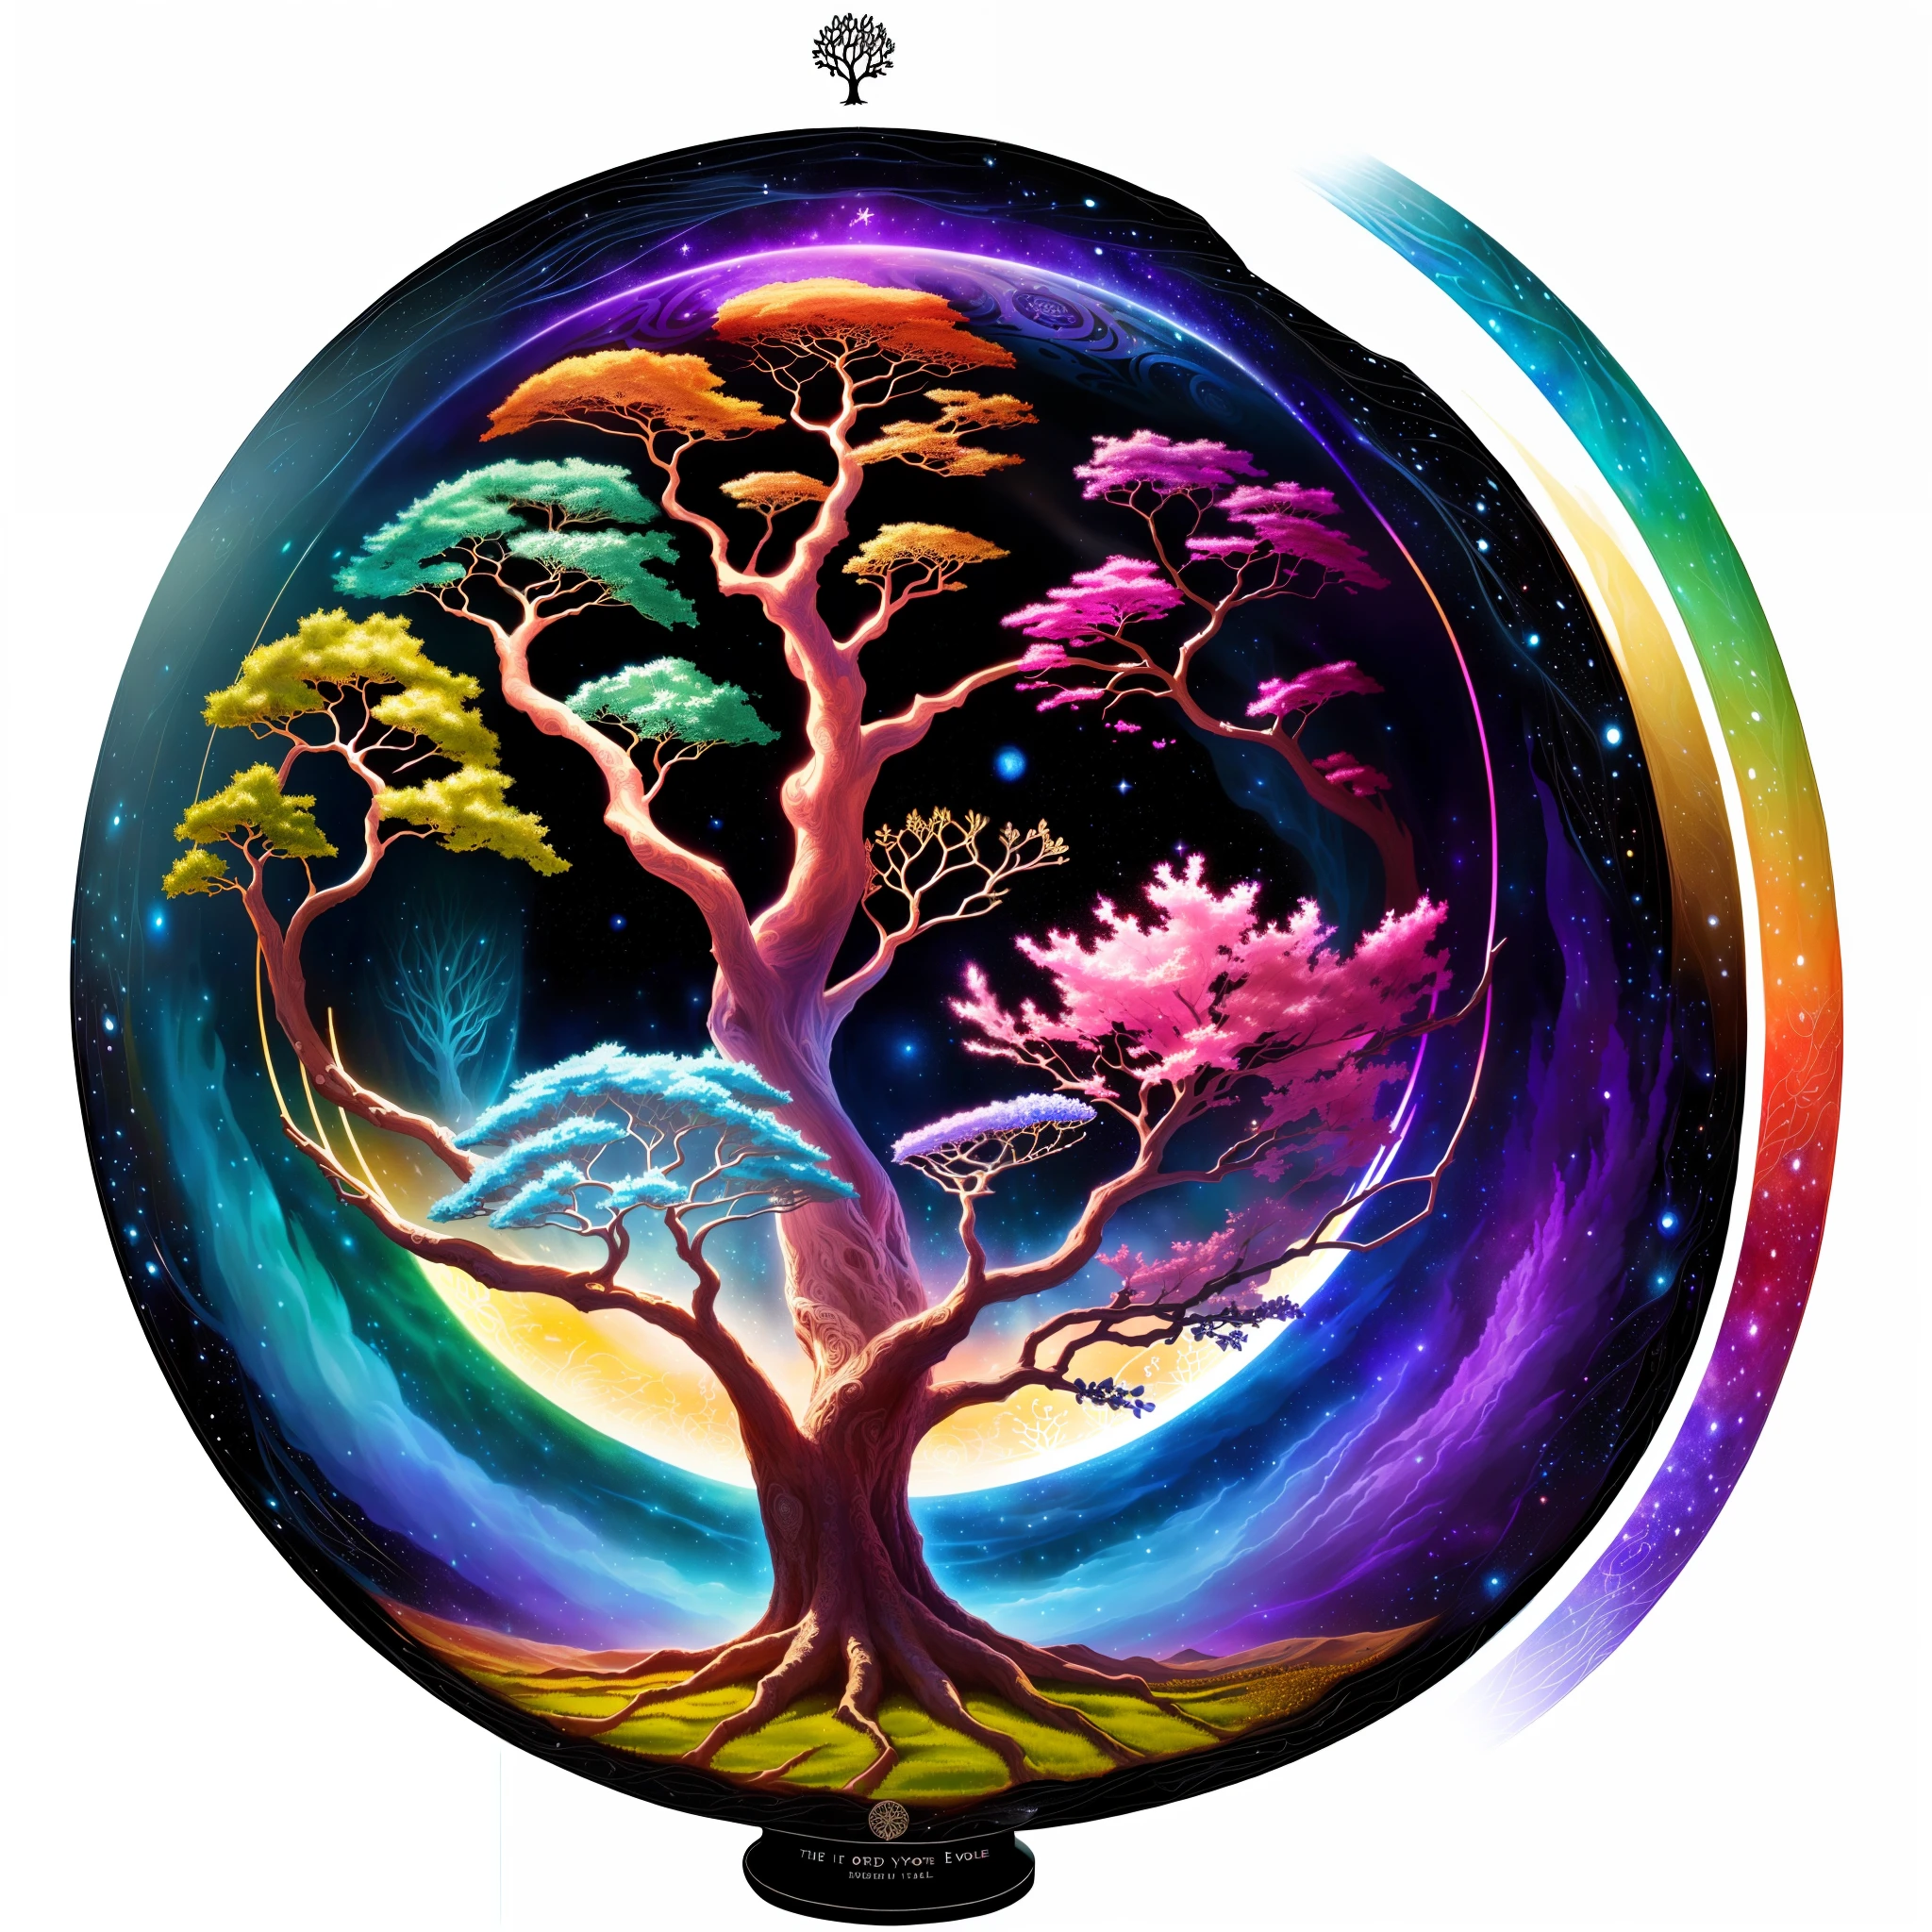 มีภาพต้นไม้หลากสีสัน, ต้นไม้แห่งชีวิต seed of doubt, ต้นไม้โลก, ต้นไม้แห่งชีวิต inside the ball, ต้นไม้แห่งชีวิต, the ต้นไม้โลก, cosmic ต้นไม้แห่งชีวิต, the ต้นไม้แห่งชีวิต, อิกดราซิล, ภาพประกอบงานศิลปะที่สวยงาม, ภาพประกอบทางศิลปะ, ต้นไม้แฟนตาซี, ต้นไม้วิเศษ, ภาพประกอบรายละเอียดที่สวยงาม, ต้นไม้แห่งชีวิต brains